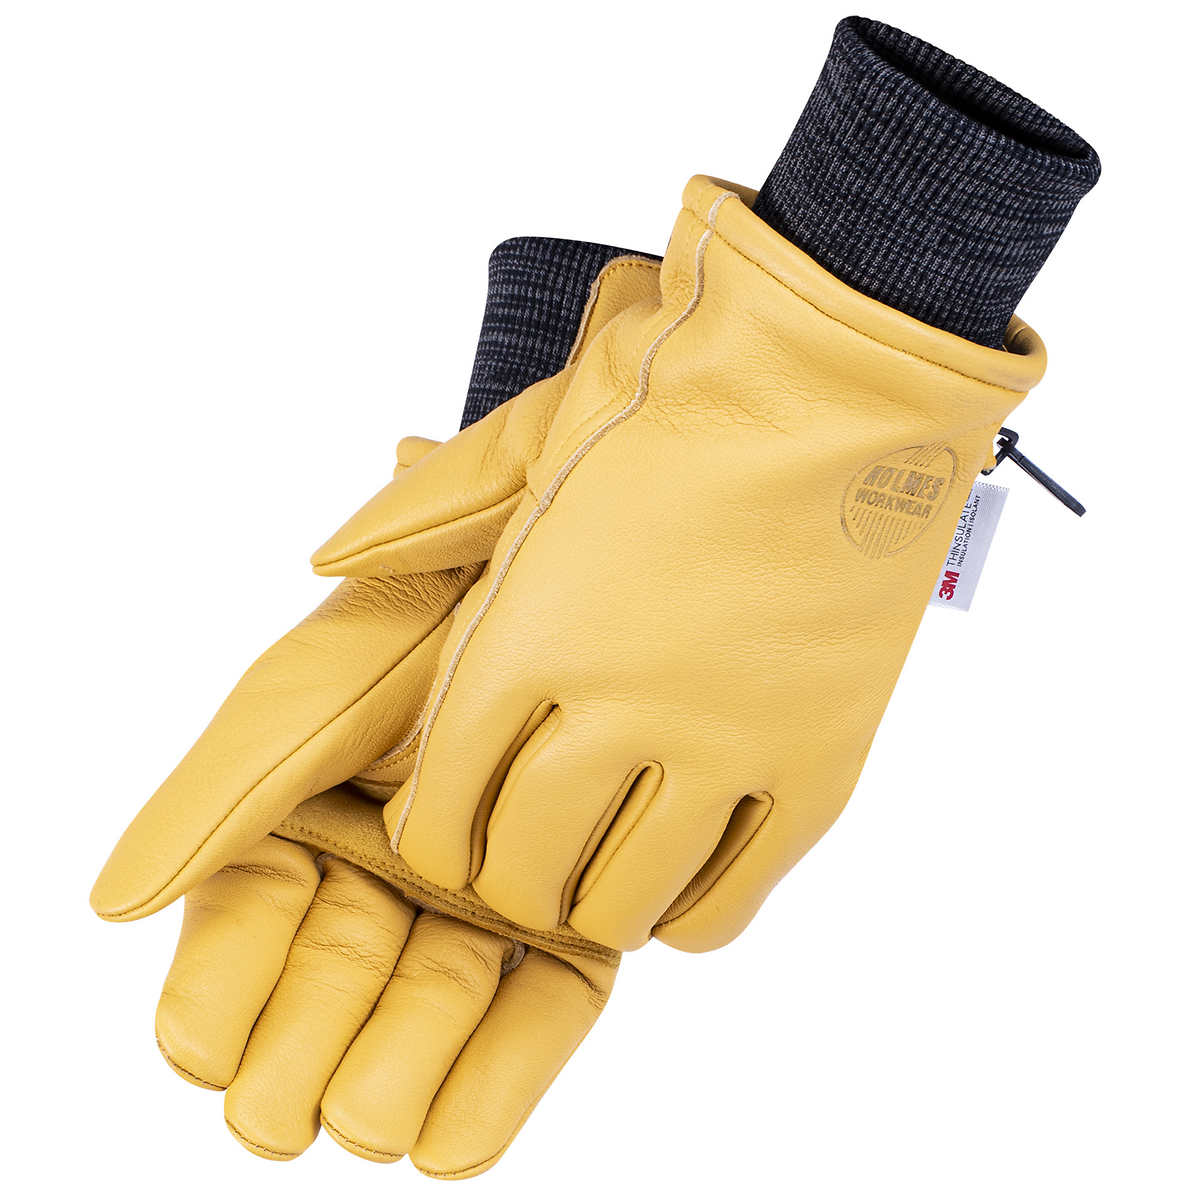 Les gants en cuir pour femme : l'accessoire tendance de l'hiver